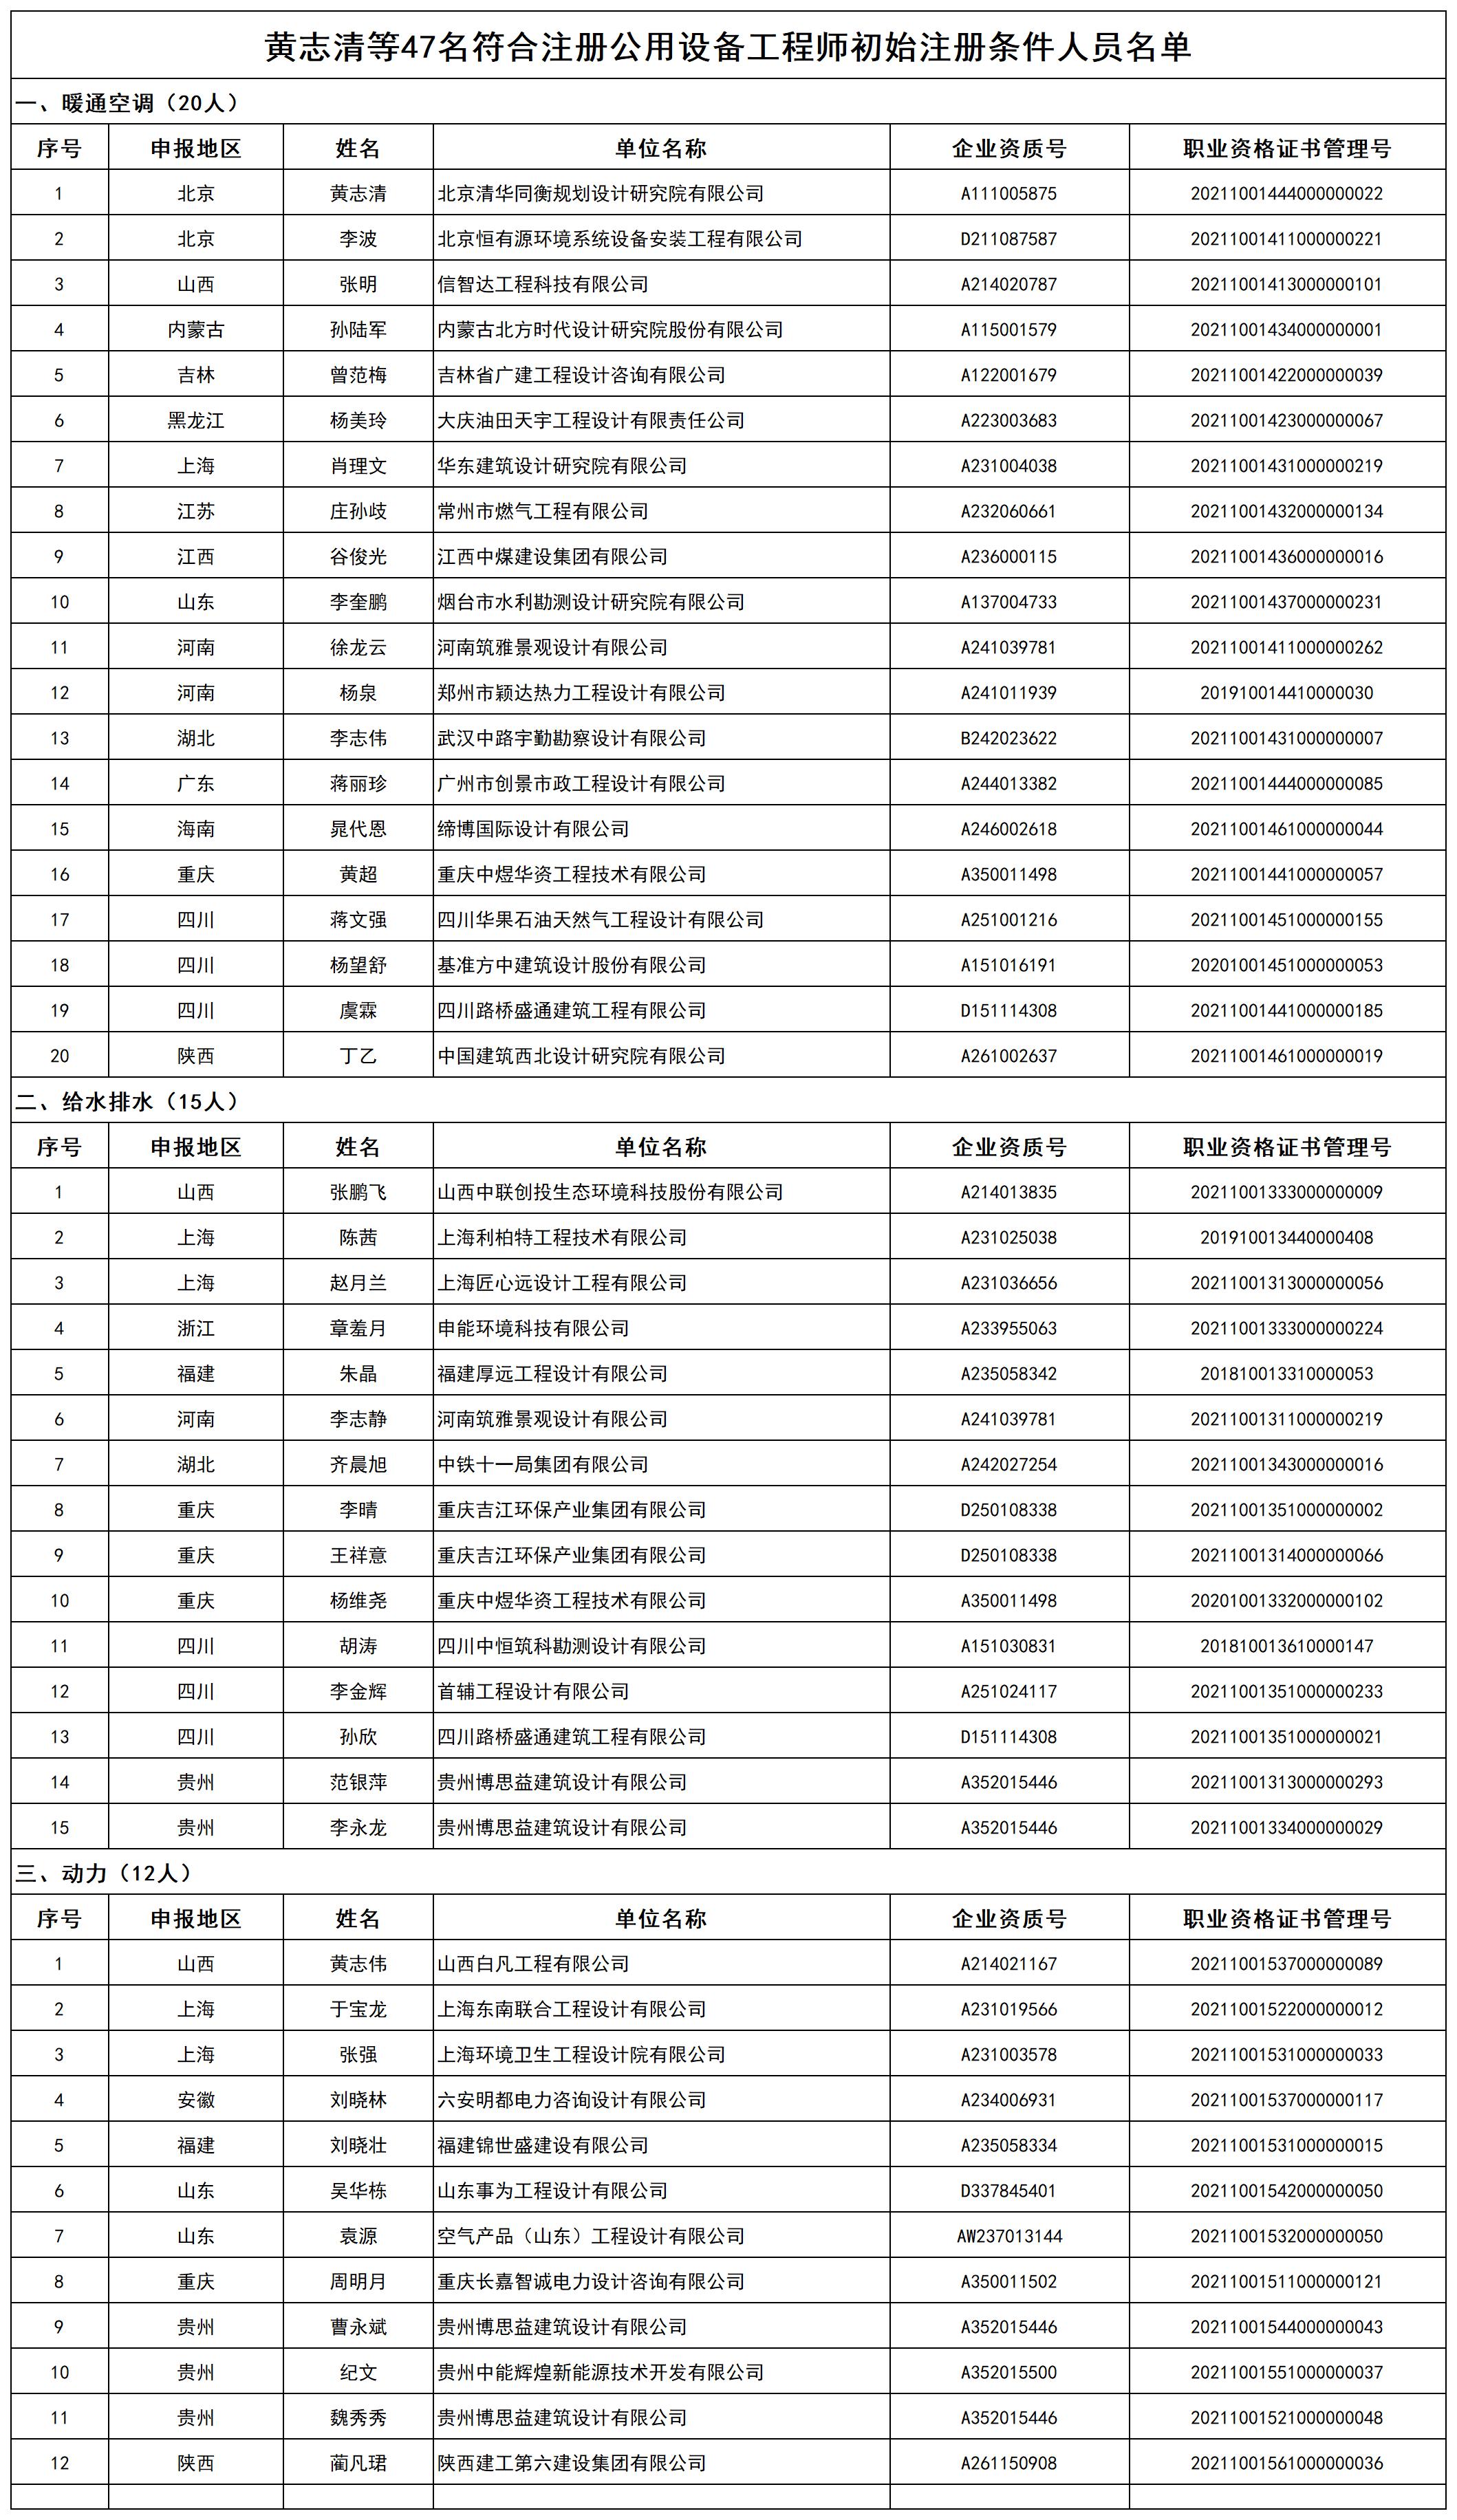 黄志清等47名符合注册公用设备工程师初始注册条件人员名单_打印结果.jpg